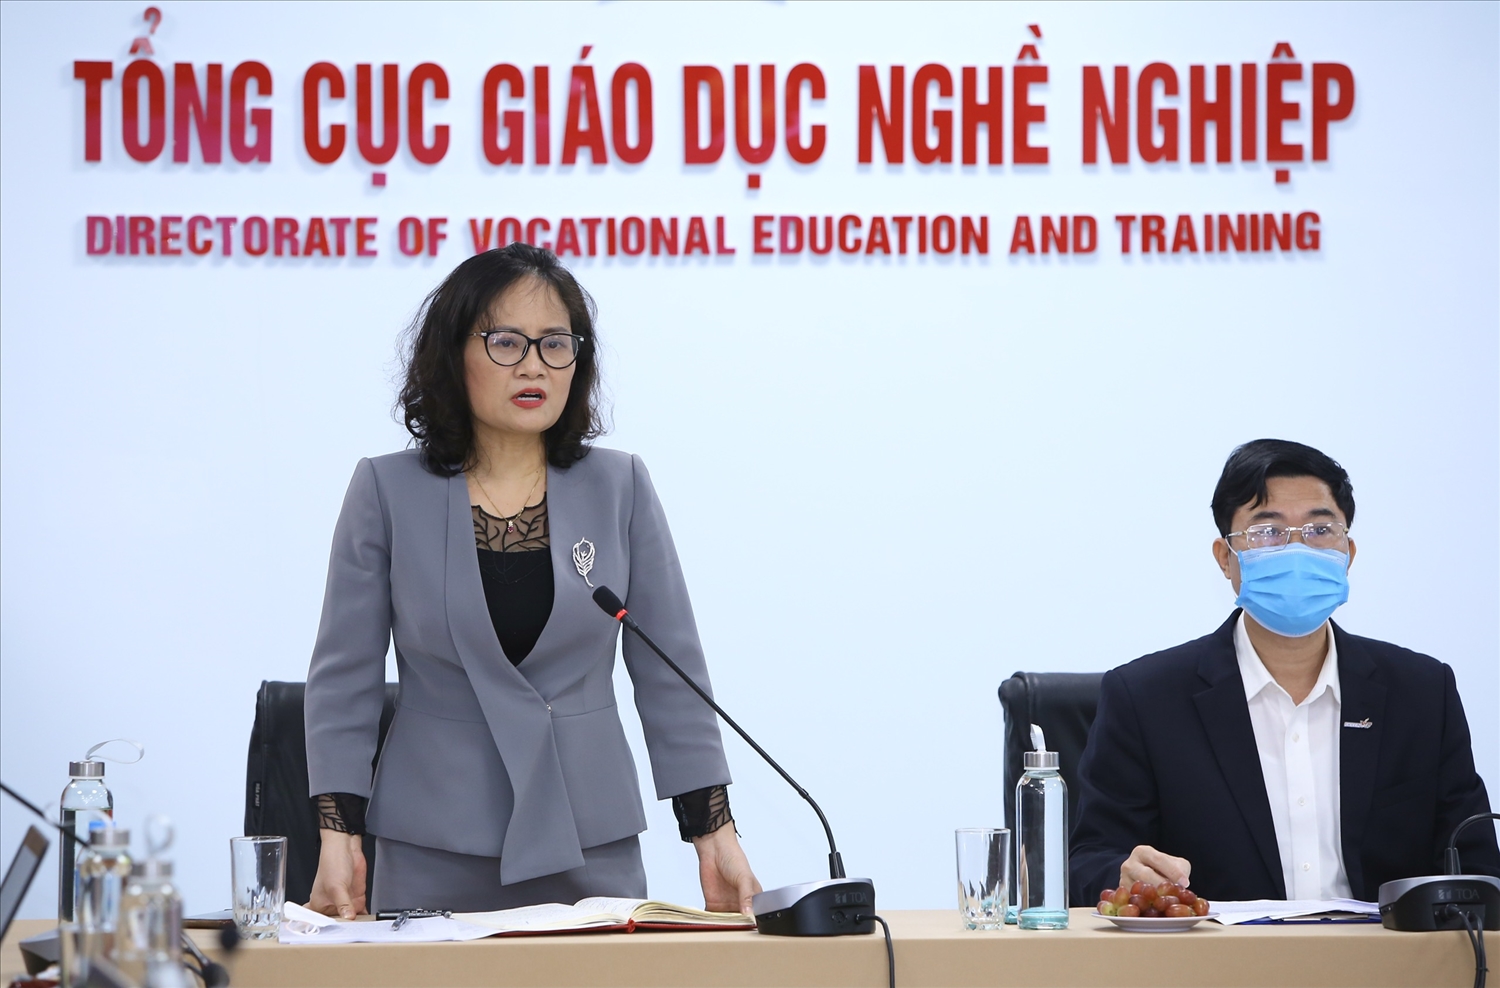 Bà Nguyễn Thị Việt Hương, Phó Tổng cục trưởng Tổng cục GDNN, Trưởng Ban Tổ chức Hội giảng nhà giáo GDNN toàn quốc năm 2021 thông tin với báo chí tại cuộc gặp sáng 9/11/2021.